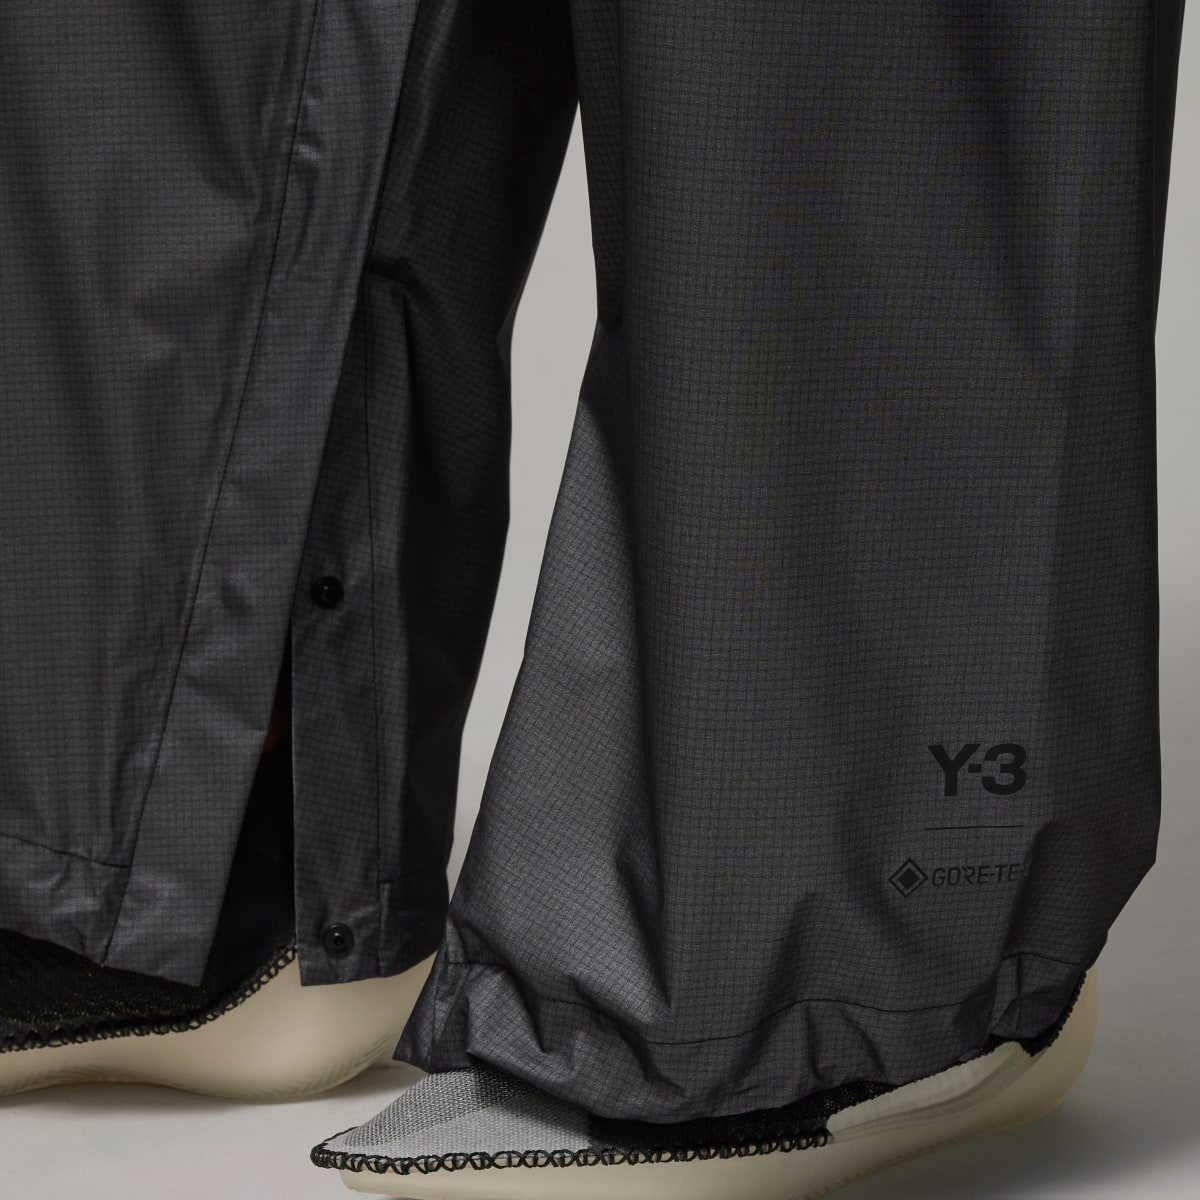 Adidas Y-3 GORE-TEX Pants. 8